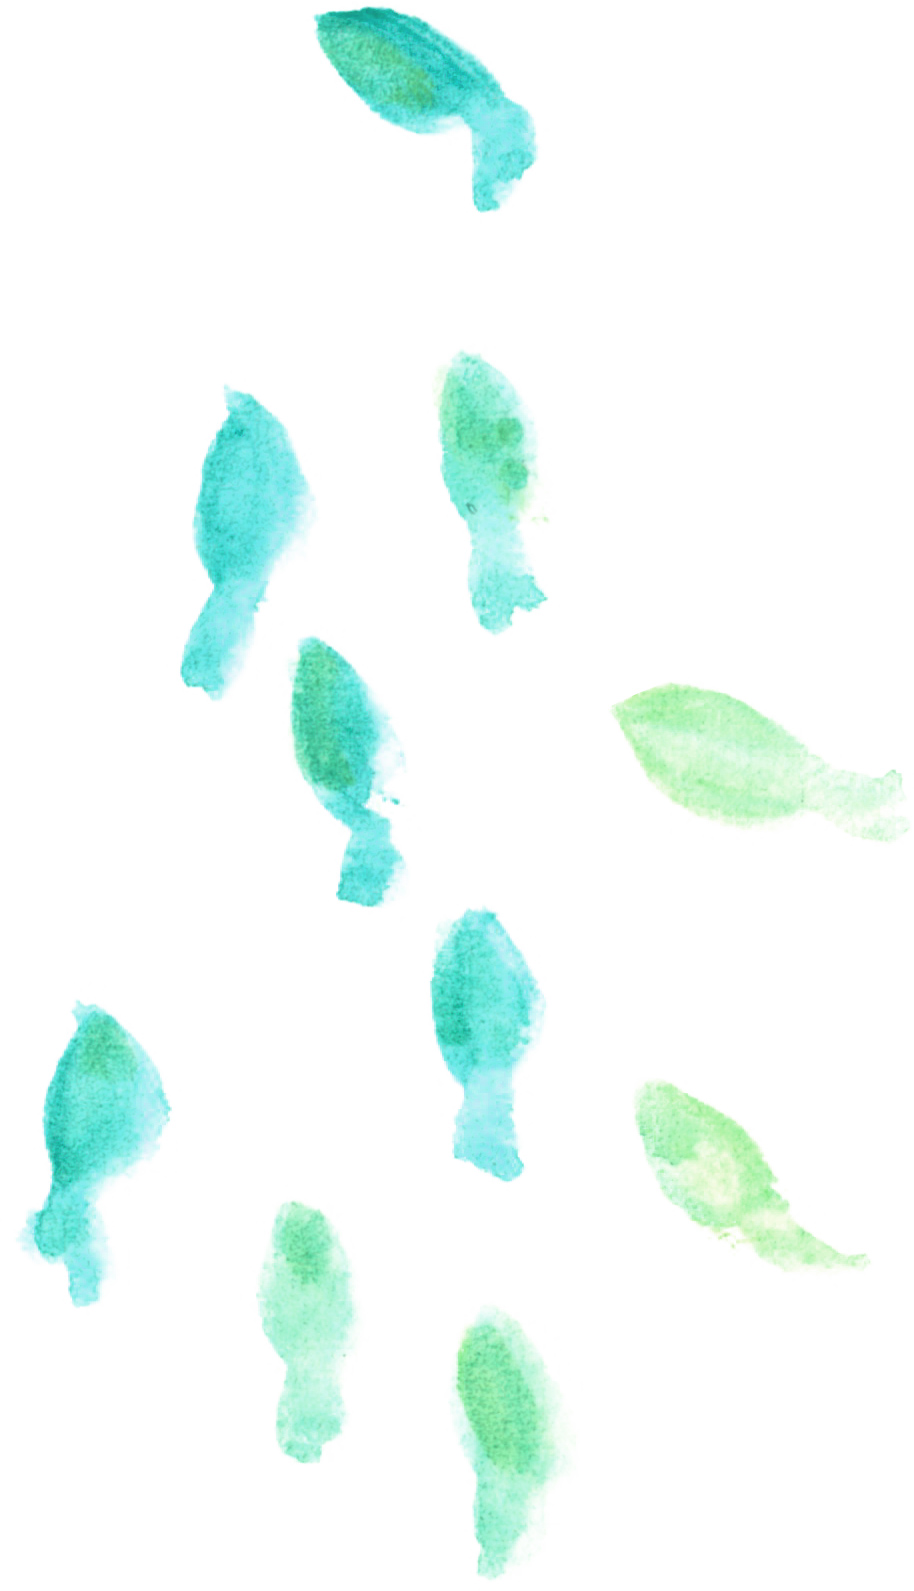 可愛いイラスト無料 水彩 金魚 青緑色 公式 イラストダウンロード